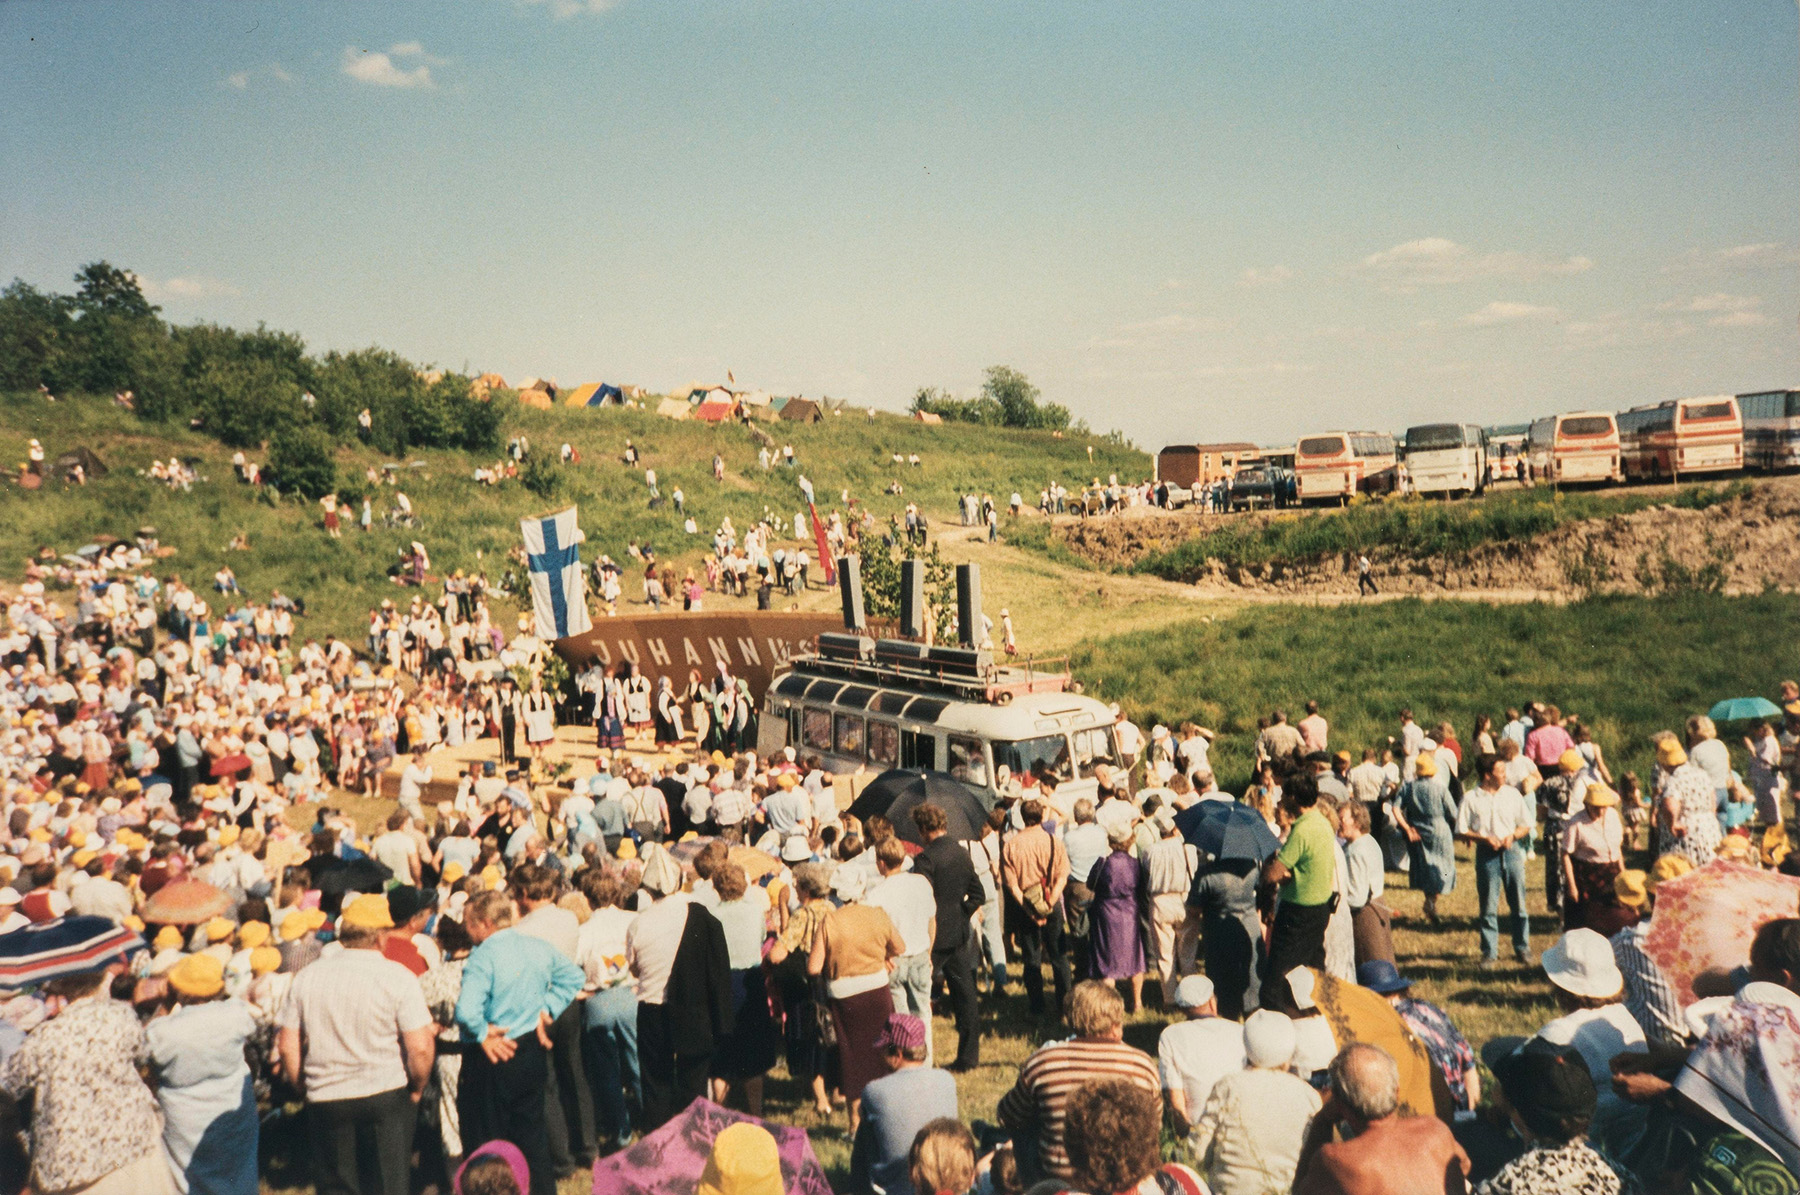 Juhannusjuhlat Tuutarissa vuonna 1990. SKS KIA, Heistosen suvun arkisto. CC BY 4.0